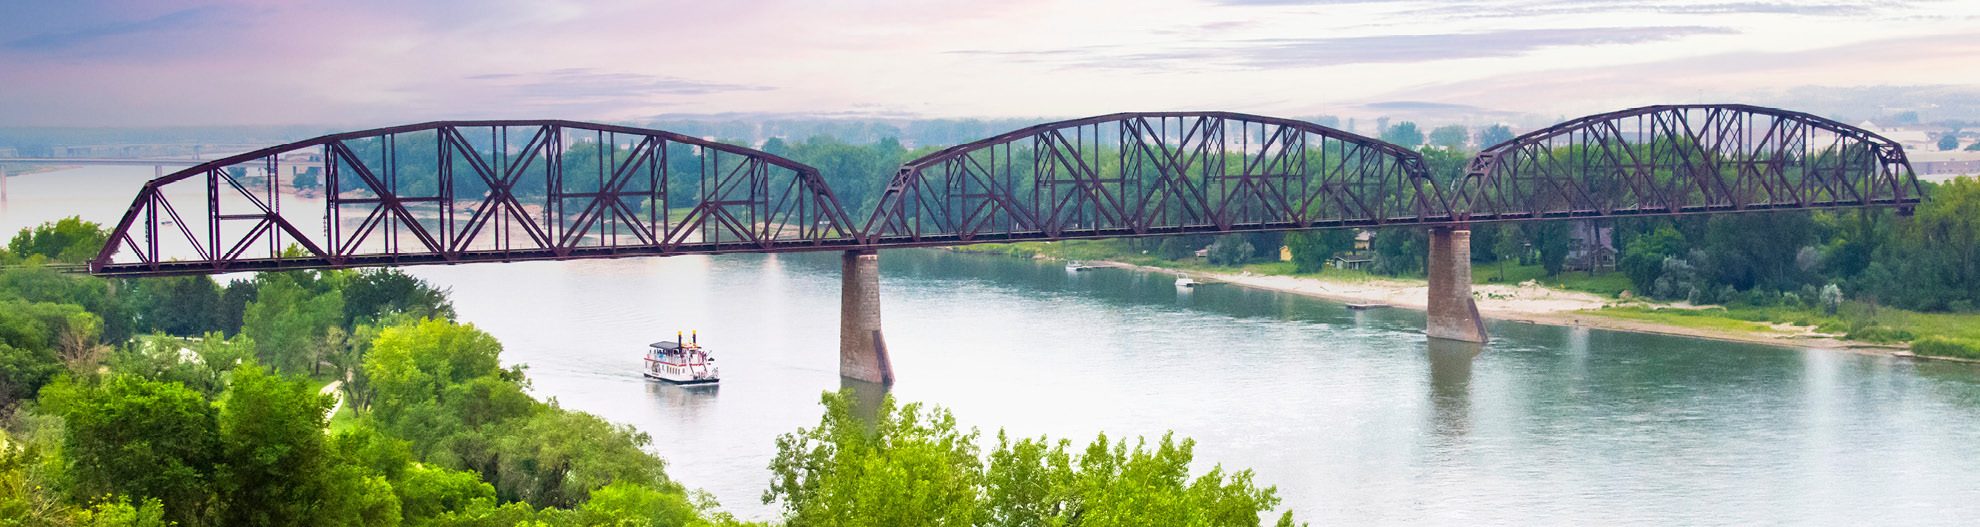 Railroad Bridge Over Missouri River